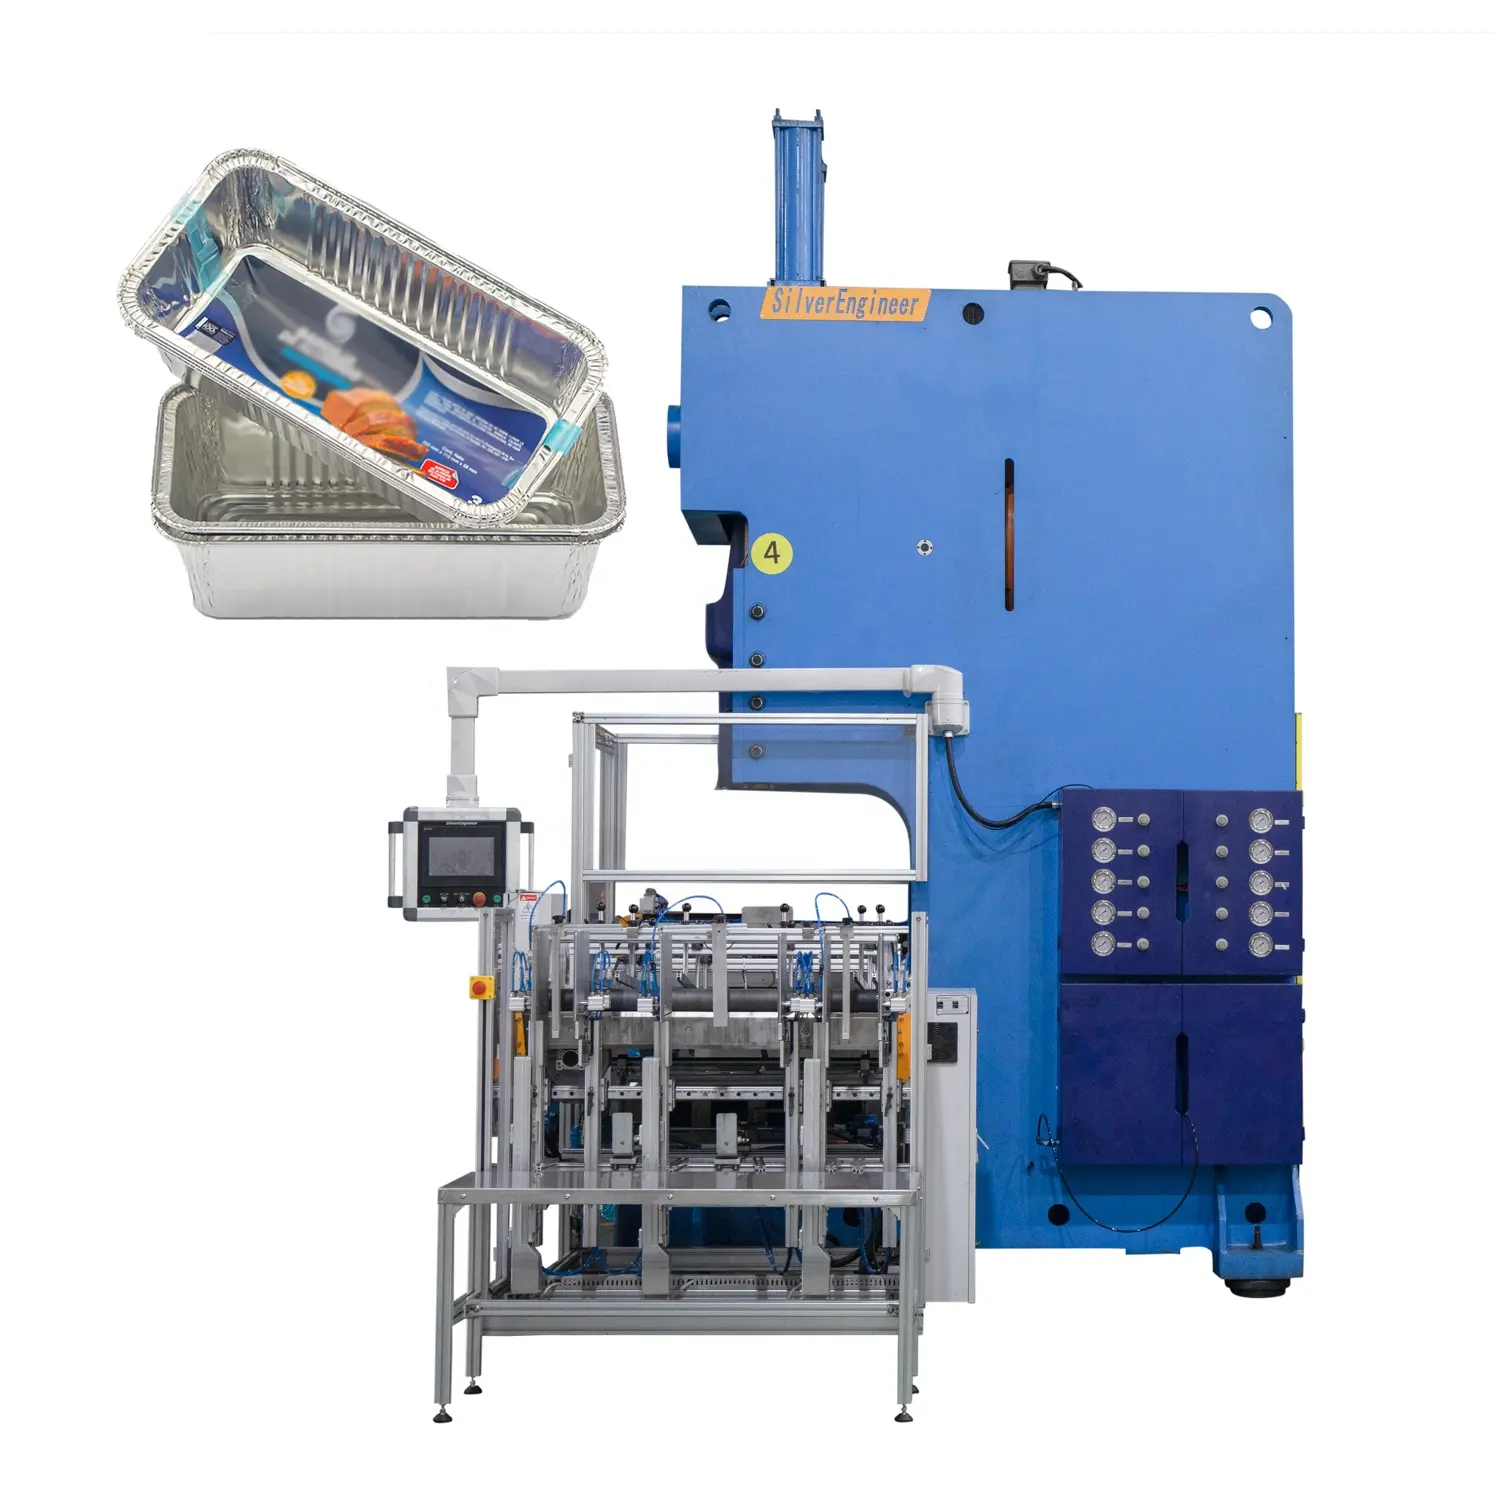 מכונת ייצור אוטומטית של מיכל נייר אלומיניום 8011 באיכות גבוהה ובמחיר נמוך עם מערם